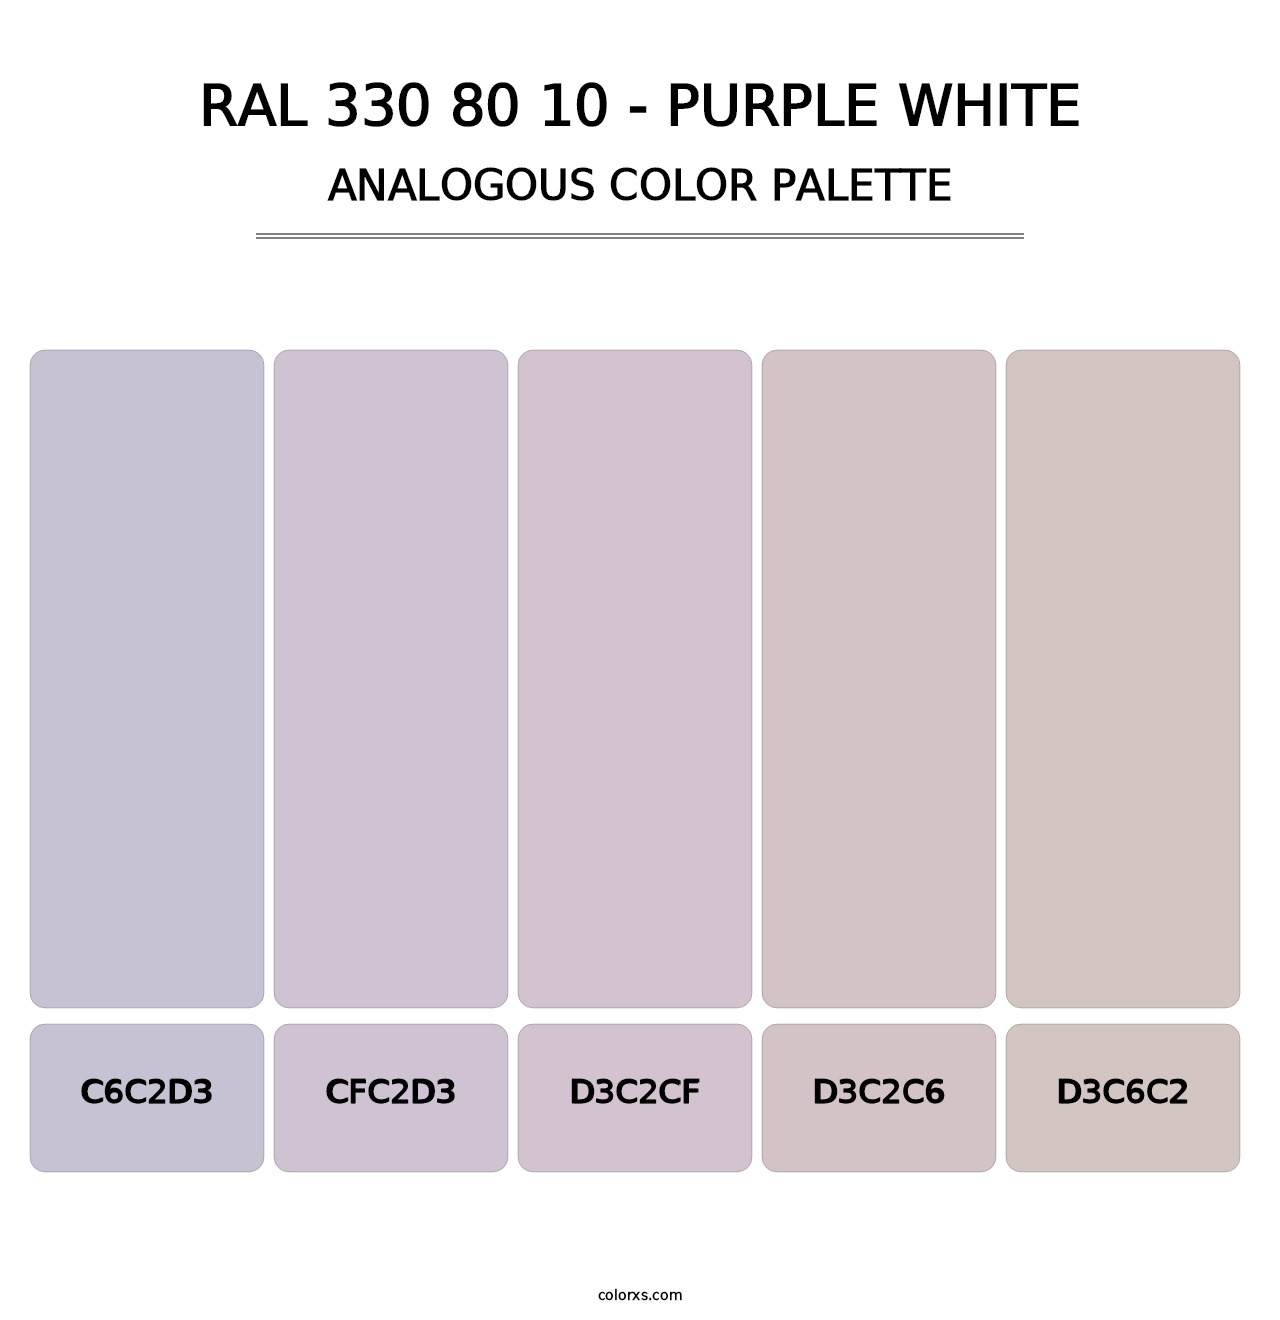 RAL 330 80 10 - Purple White - Analogous Color Palette